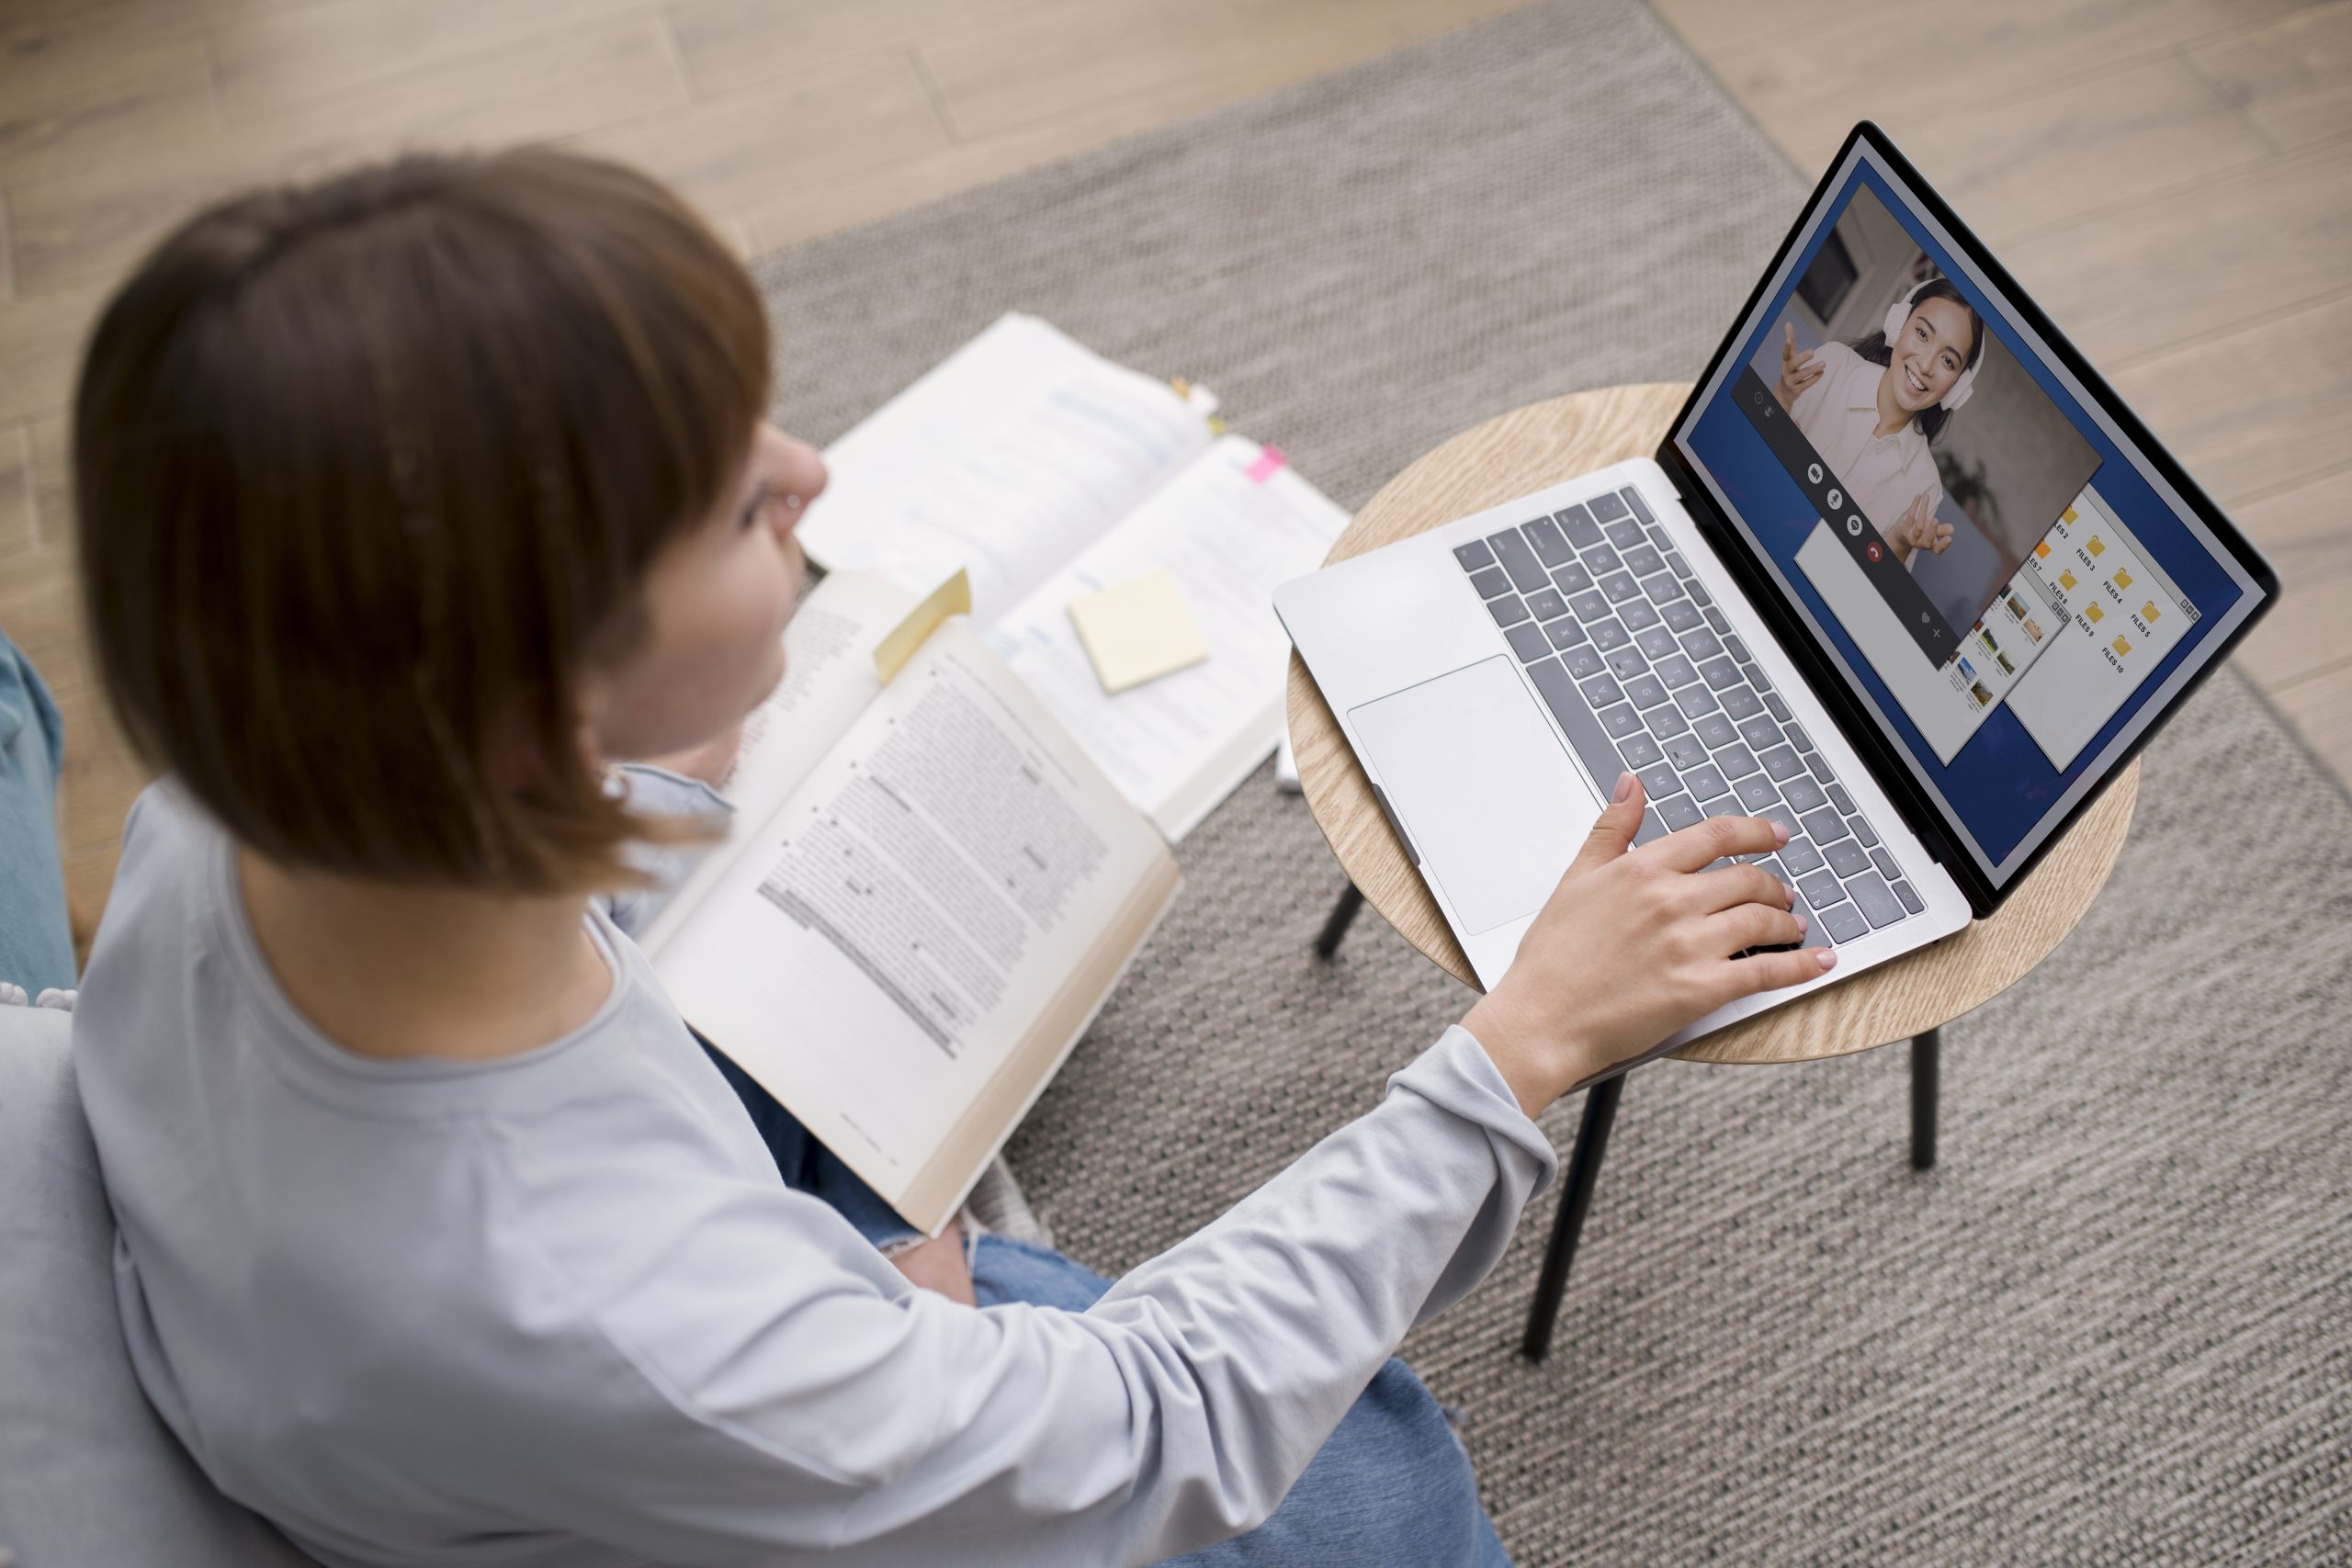 mulher assiste aula online em notebook a sua frente com livros no colo